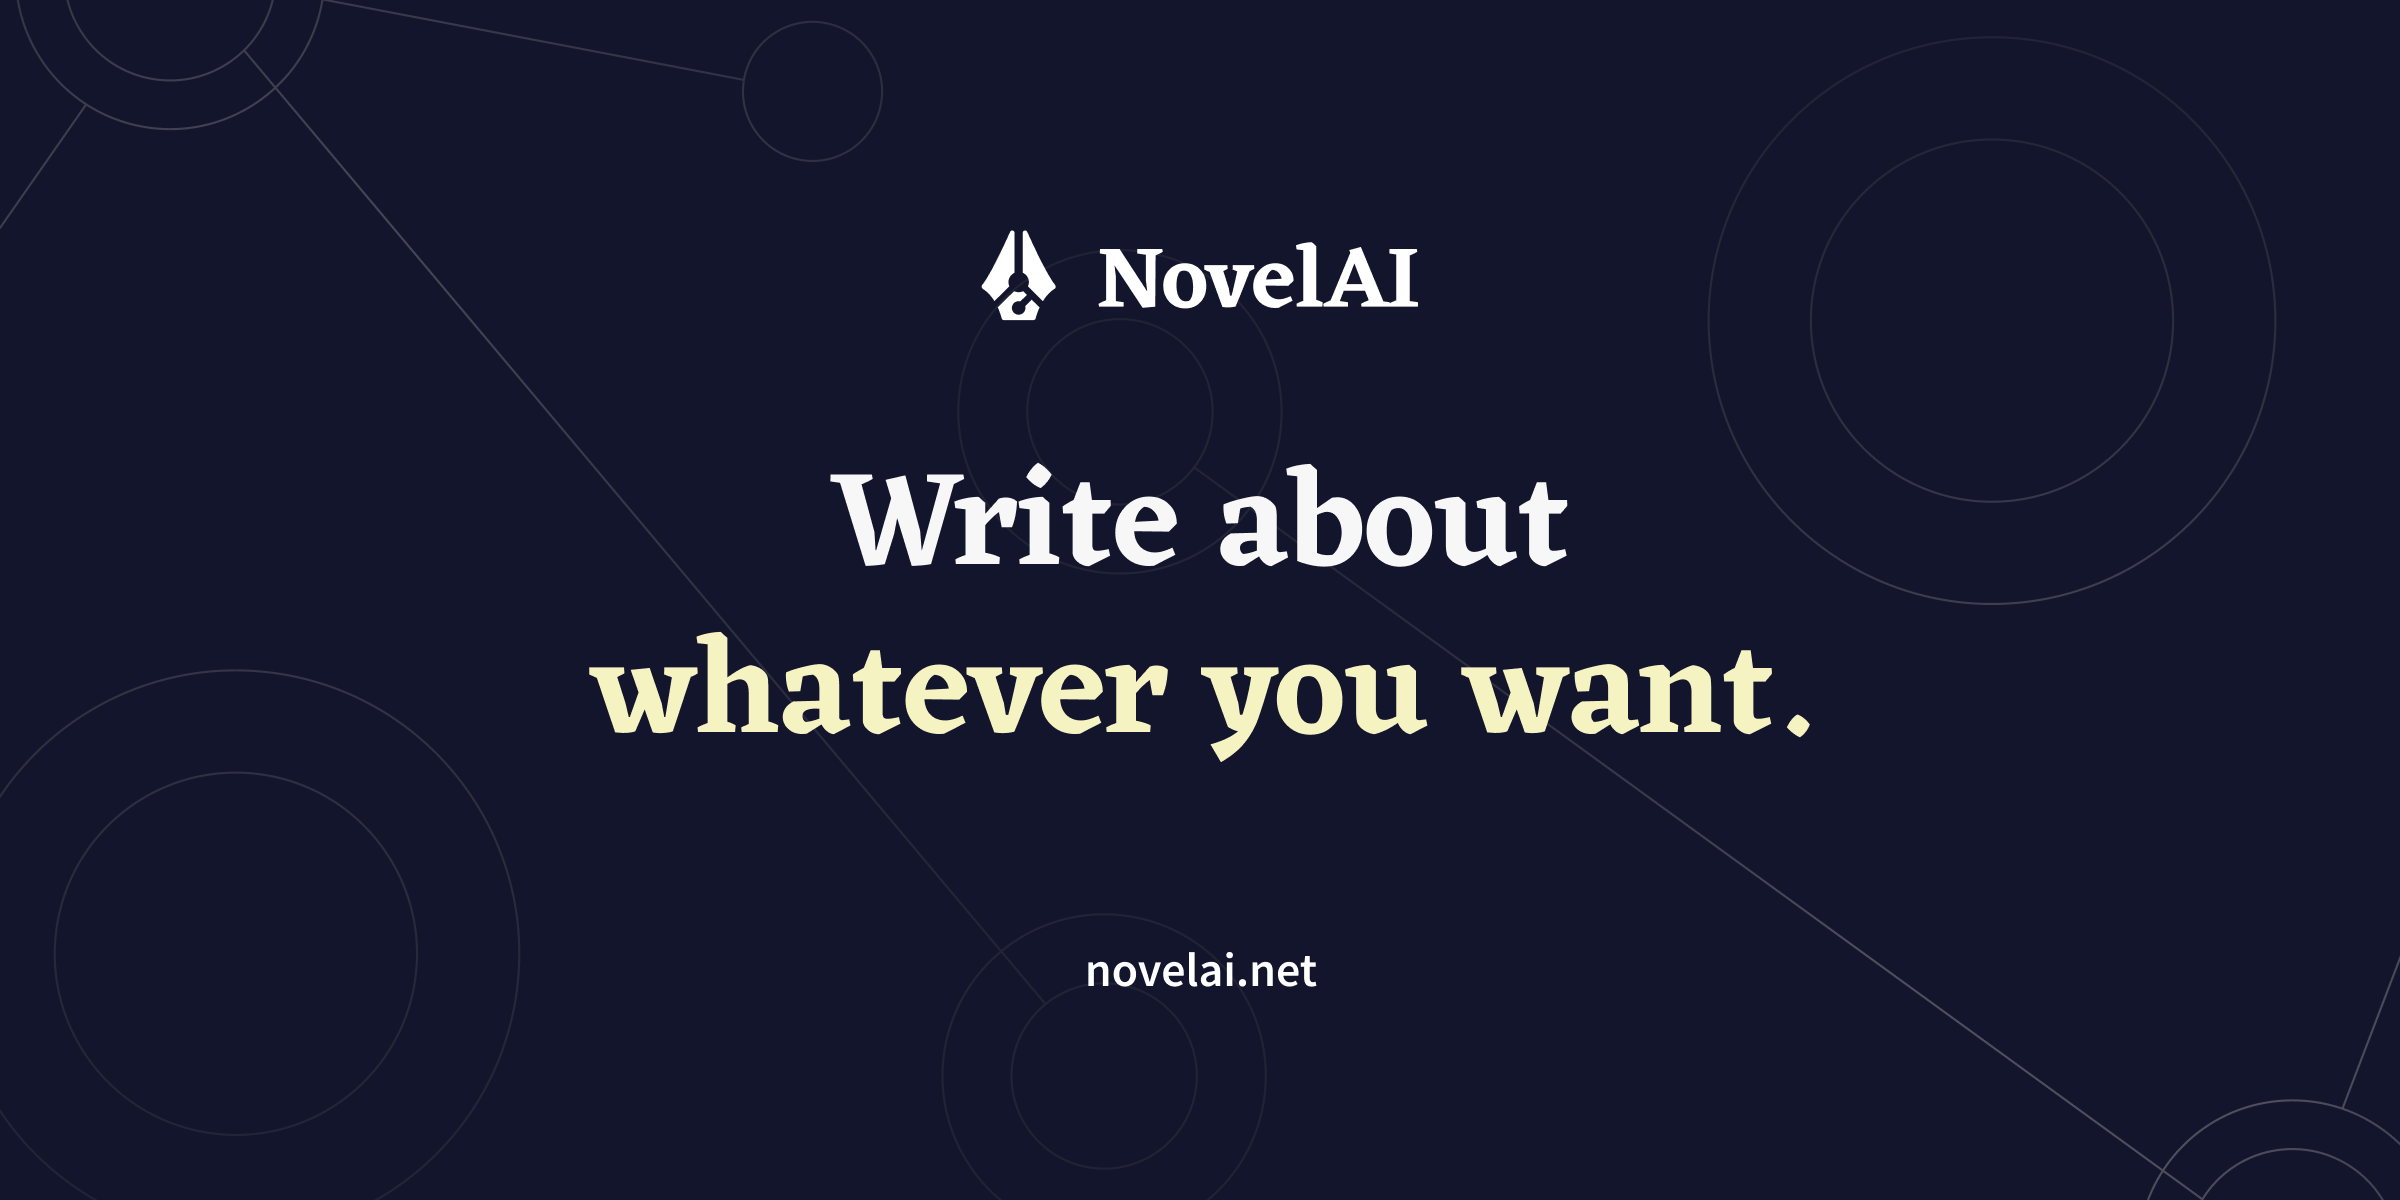 NovelAI - The AI Storyteller